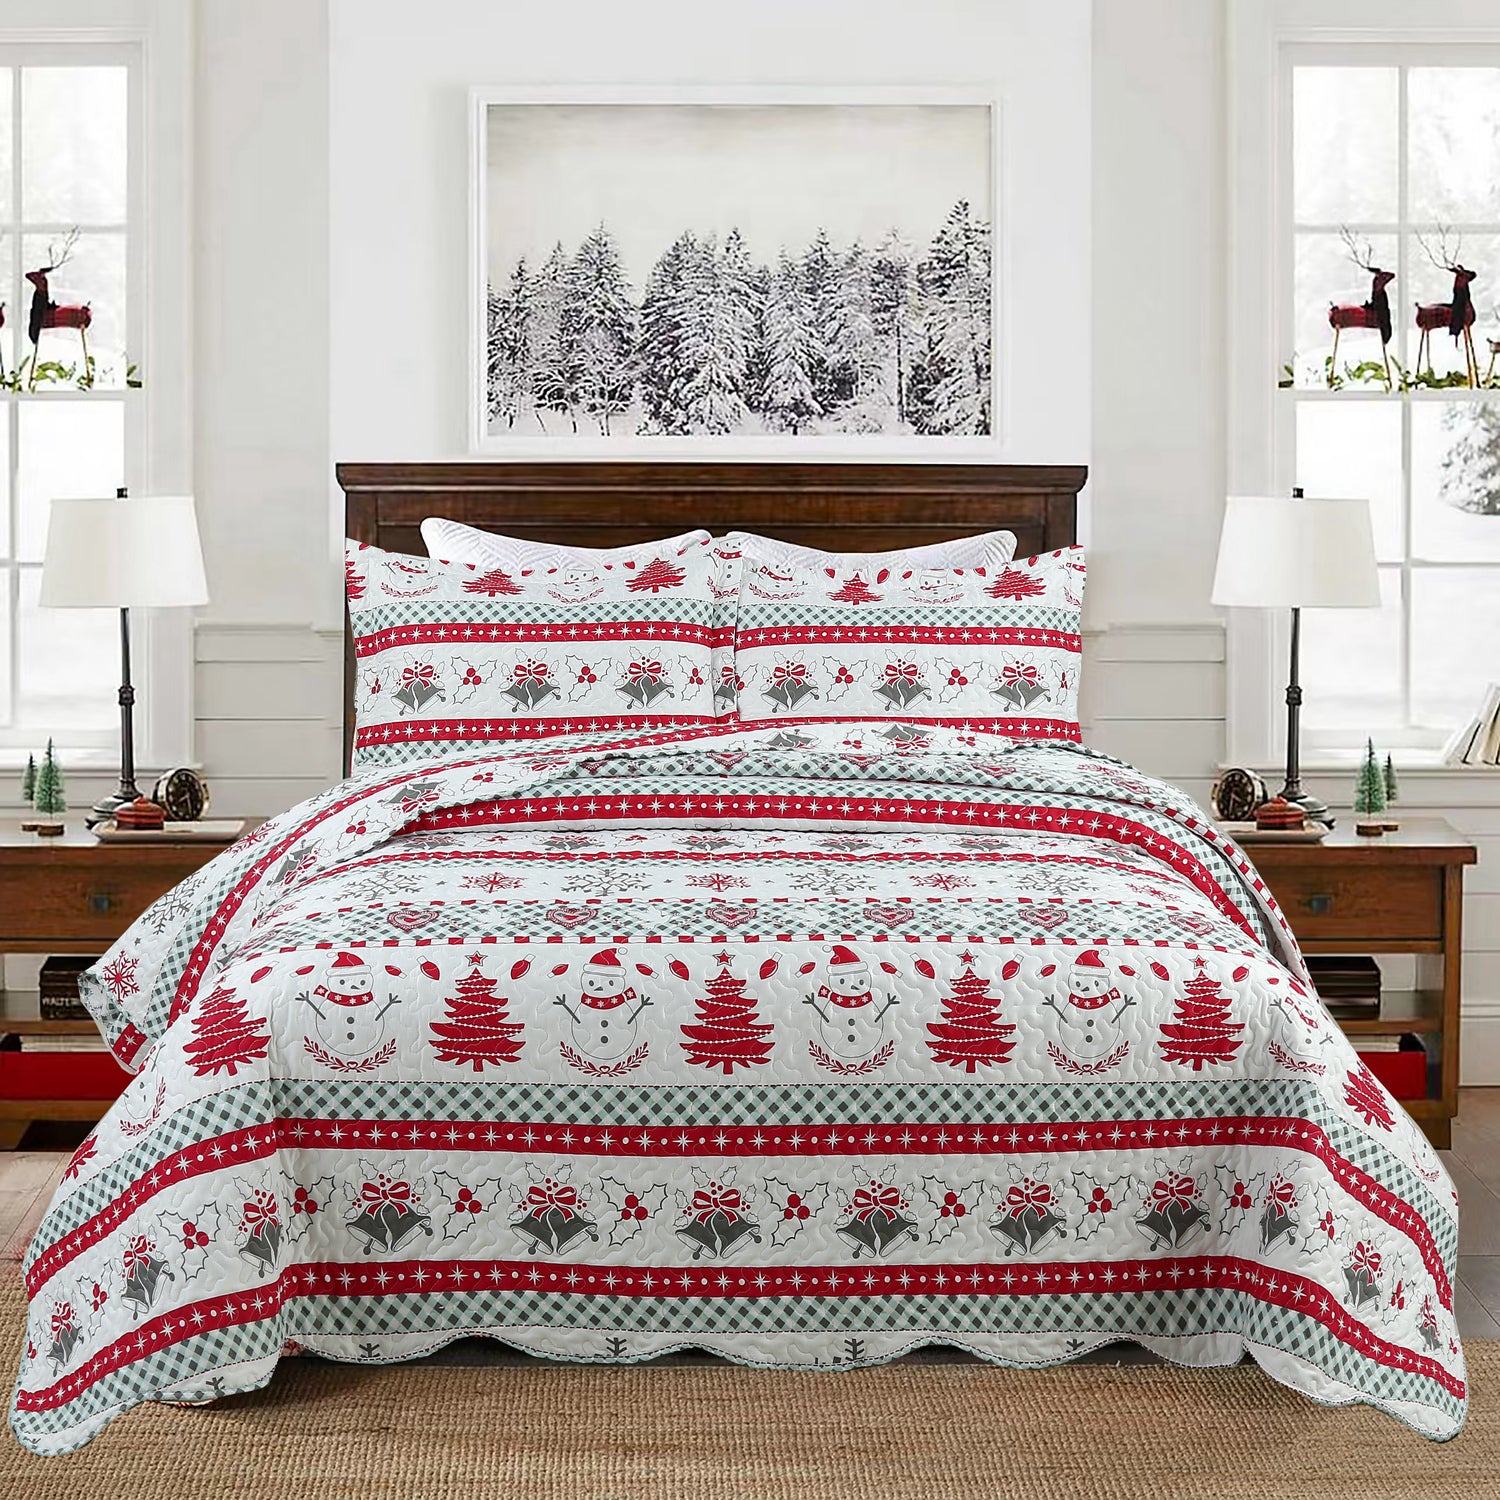 3 Pcs Christmas Quilt Bedspread Set C89